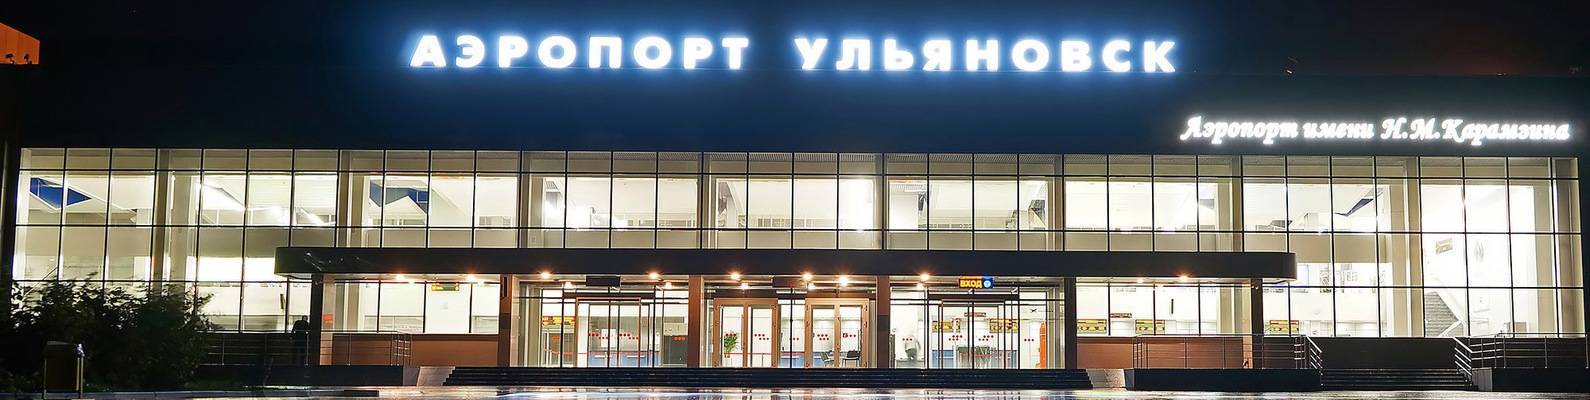 Сколько аэропортов в ульяновске | советы авиатуристам